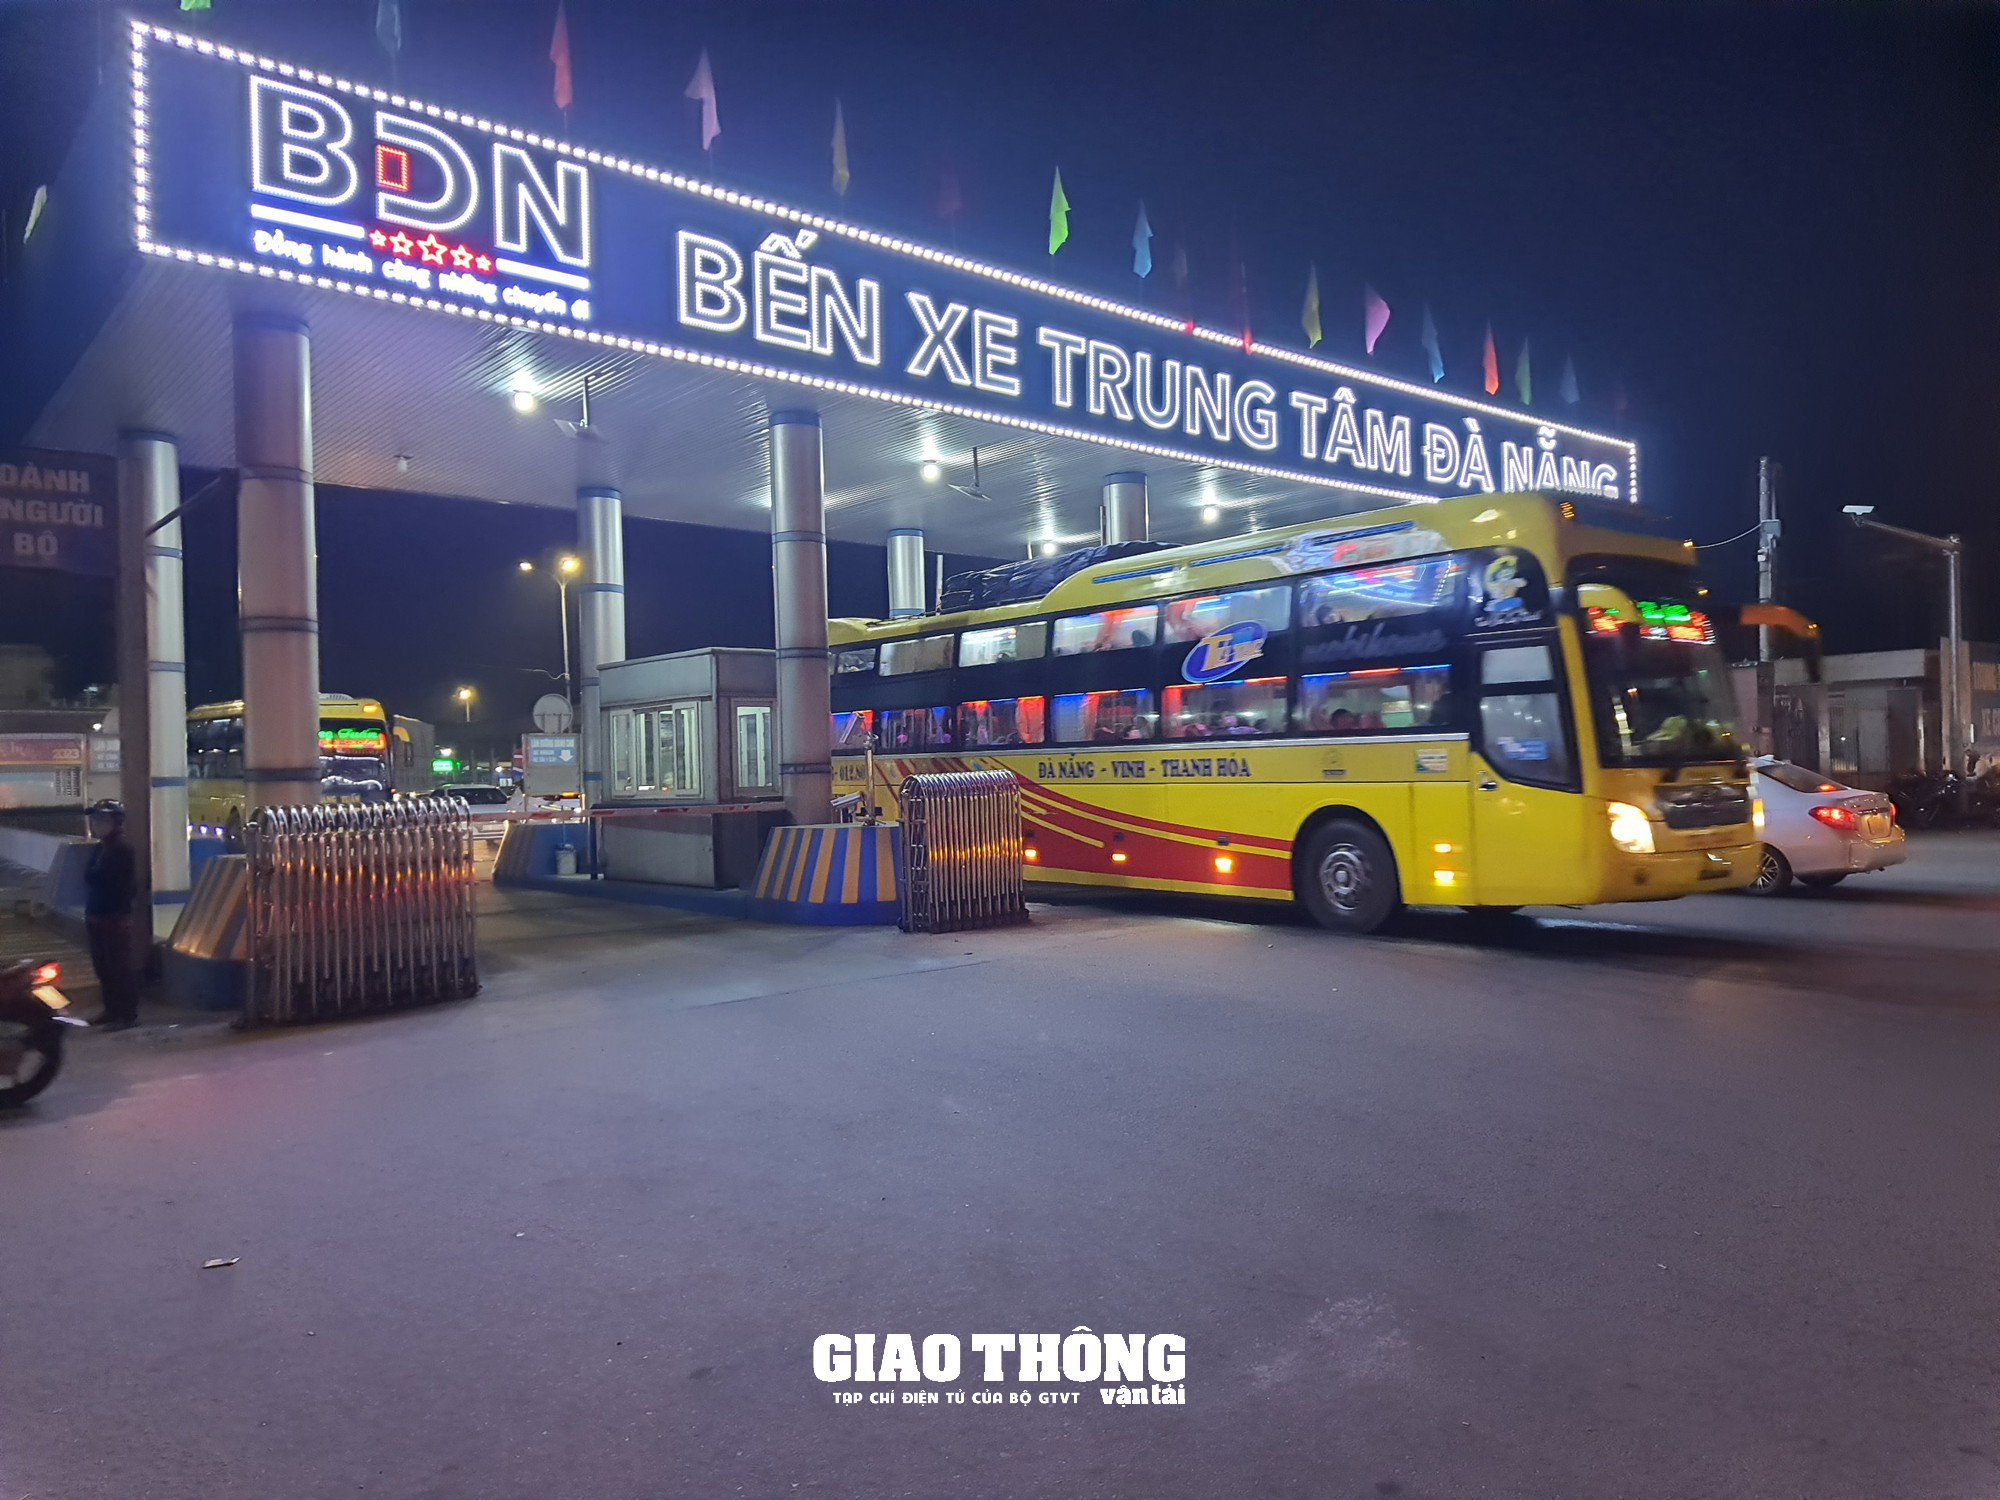 Chùm ảnh: Bến xe, sân bay Đà Nẵng nhộn nhịp khách những ngày cuối năm - Ảnh 5.